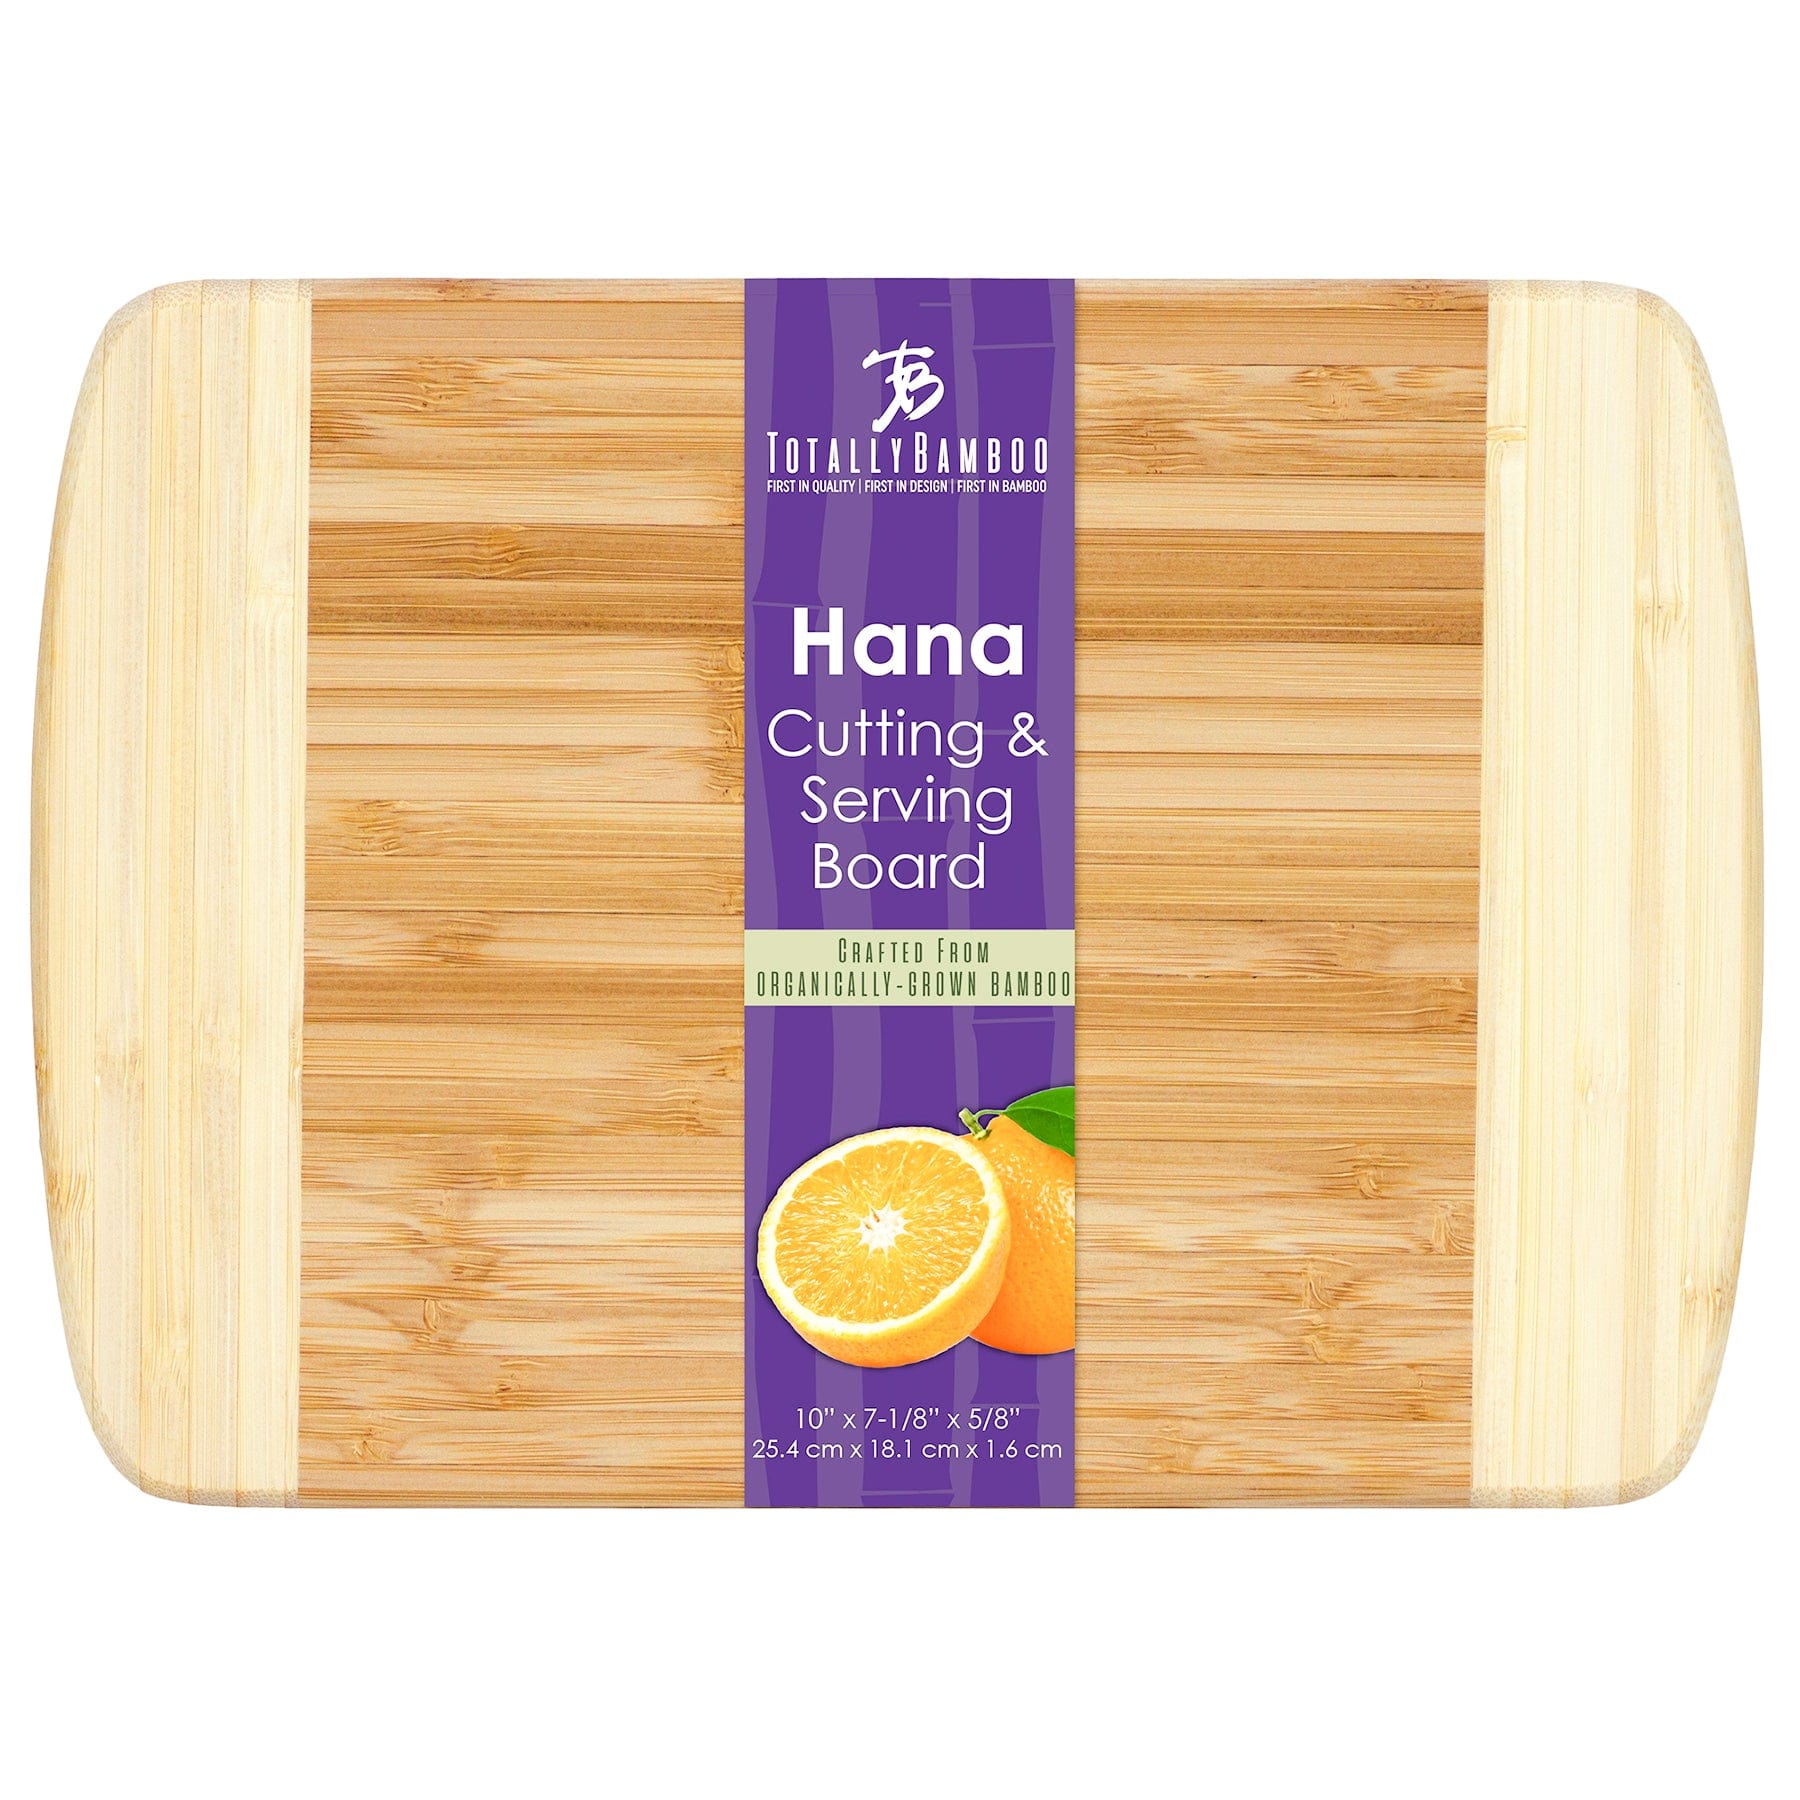 Totally Bamboo Hana Cutting Board